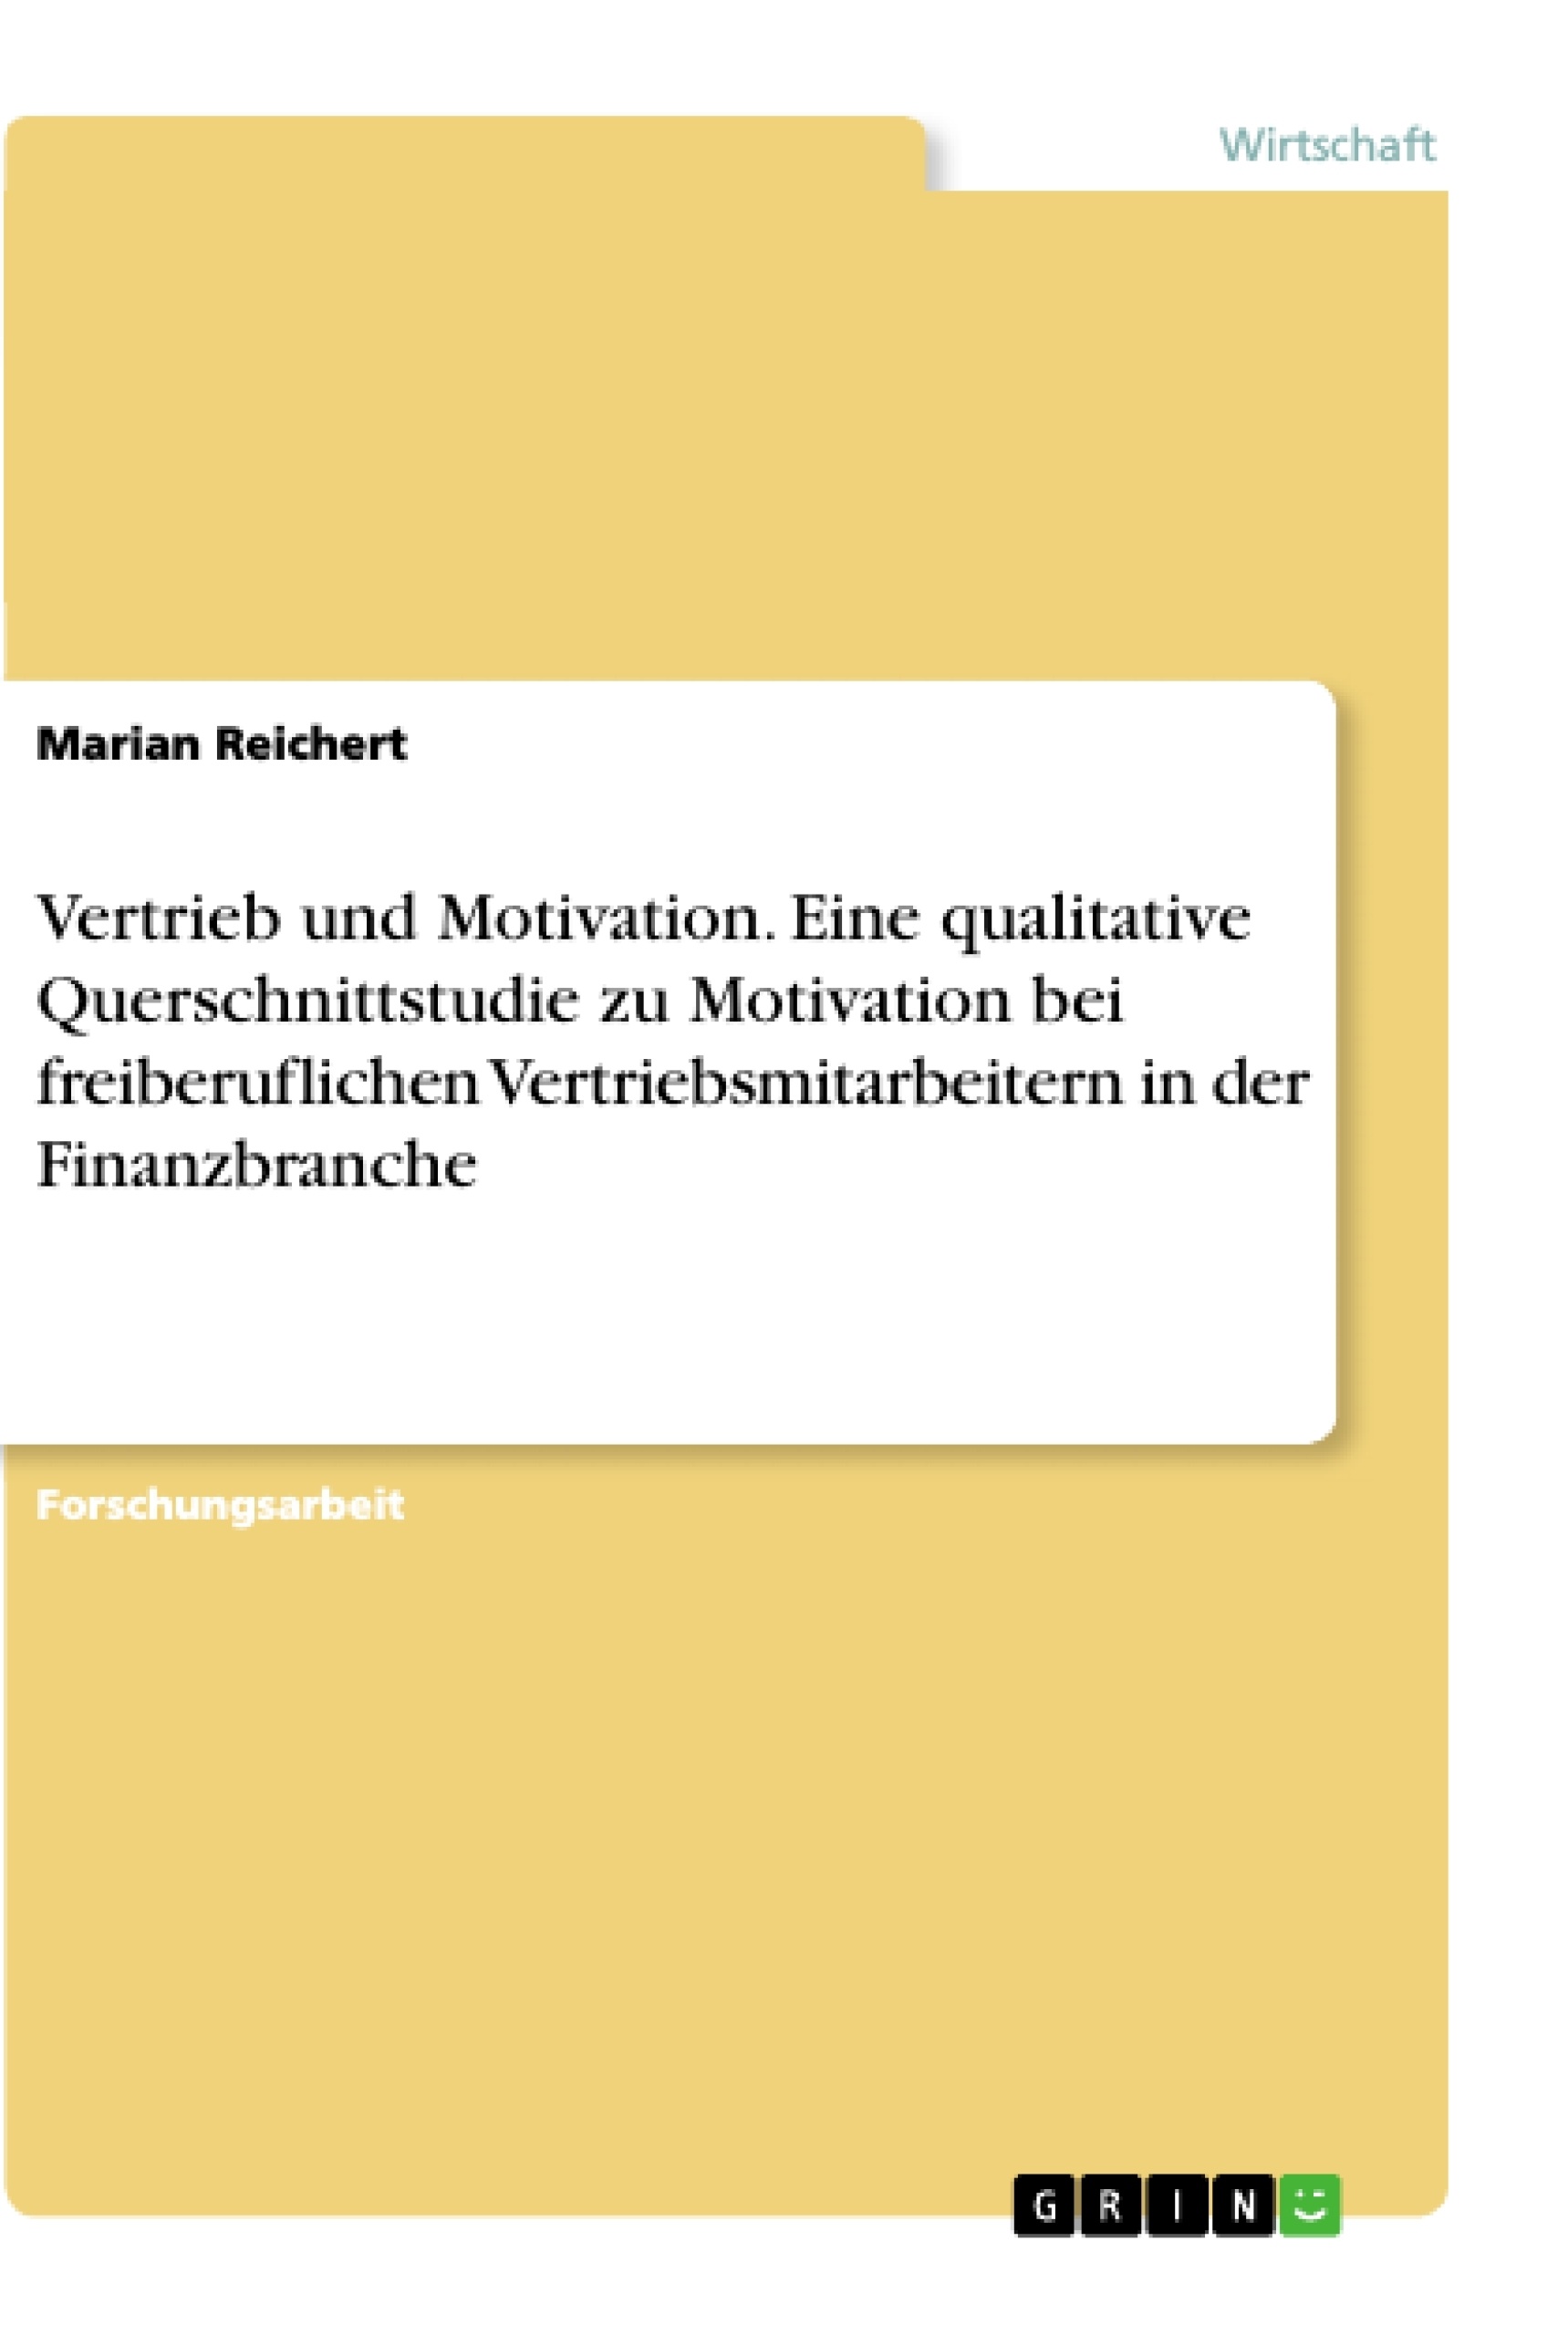 Título: Vertrieb und Motivation. Eine qualitative Querschnittstudie zu Motivation bei freiberuflichen Vertriebsmitarbeitern in der Finanzbranche